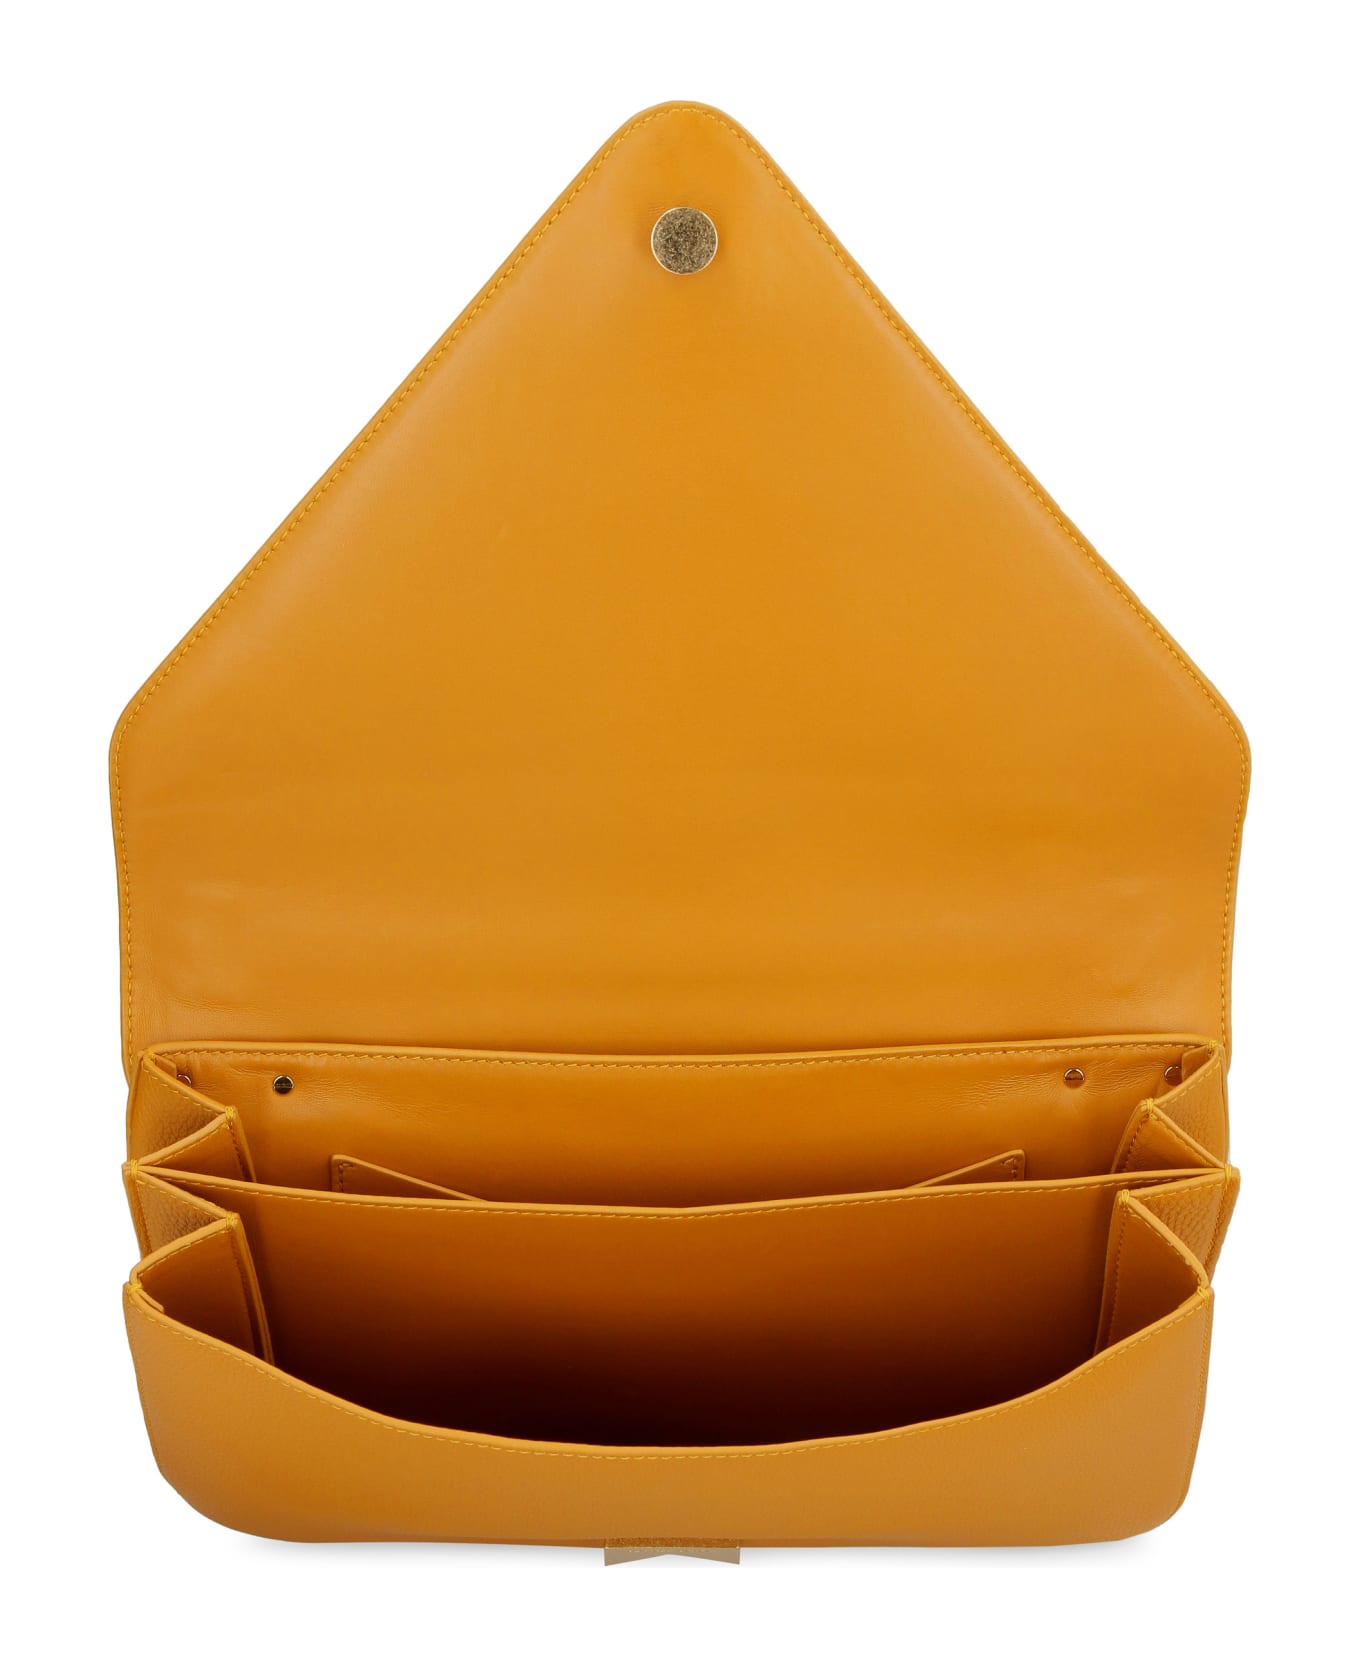 Bottega Veneta Mount Leather Envelope Bag - Ocher ショルダーバッグ